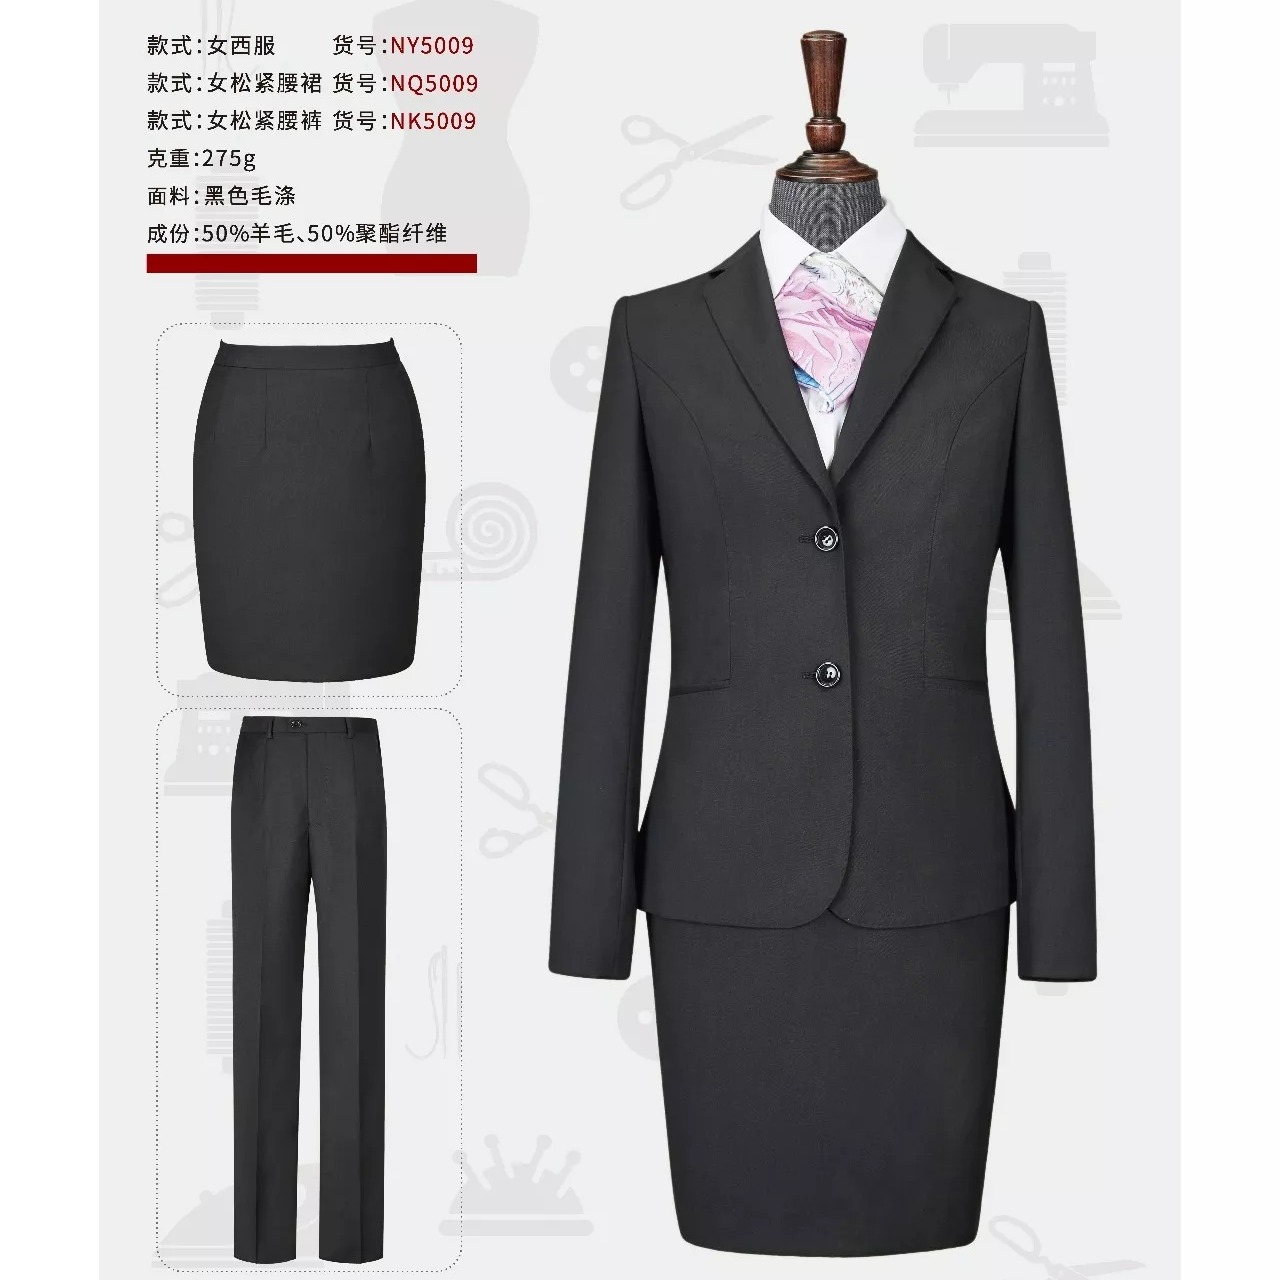 款式新颖 设计时尚 西安西服厂家定做 男式西服套装 西安职业西装3